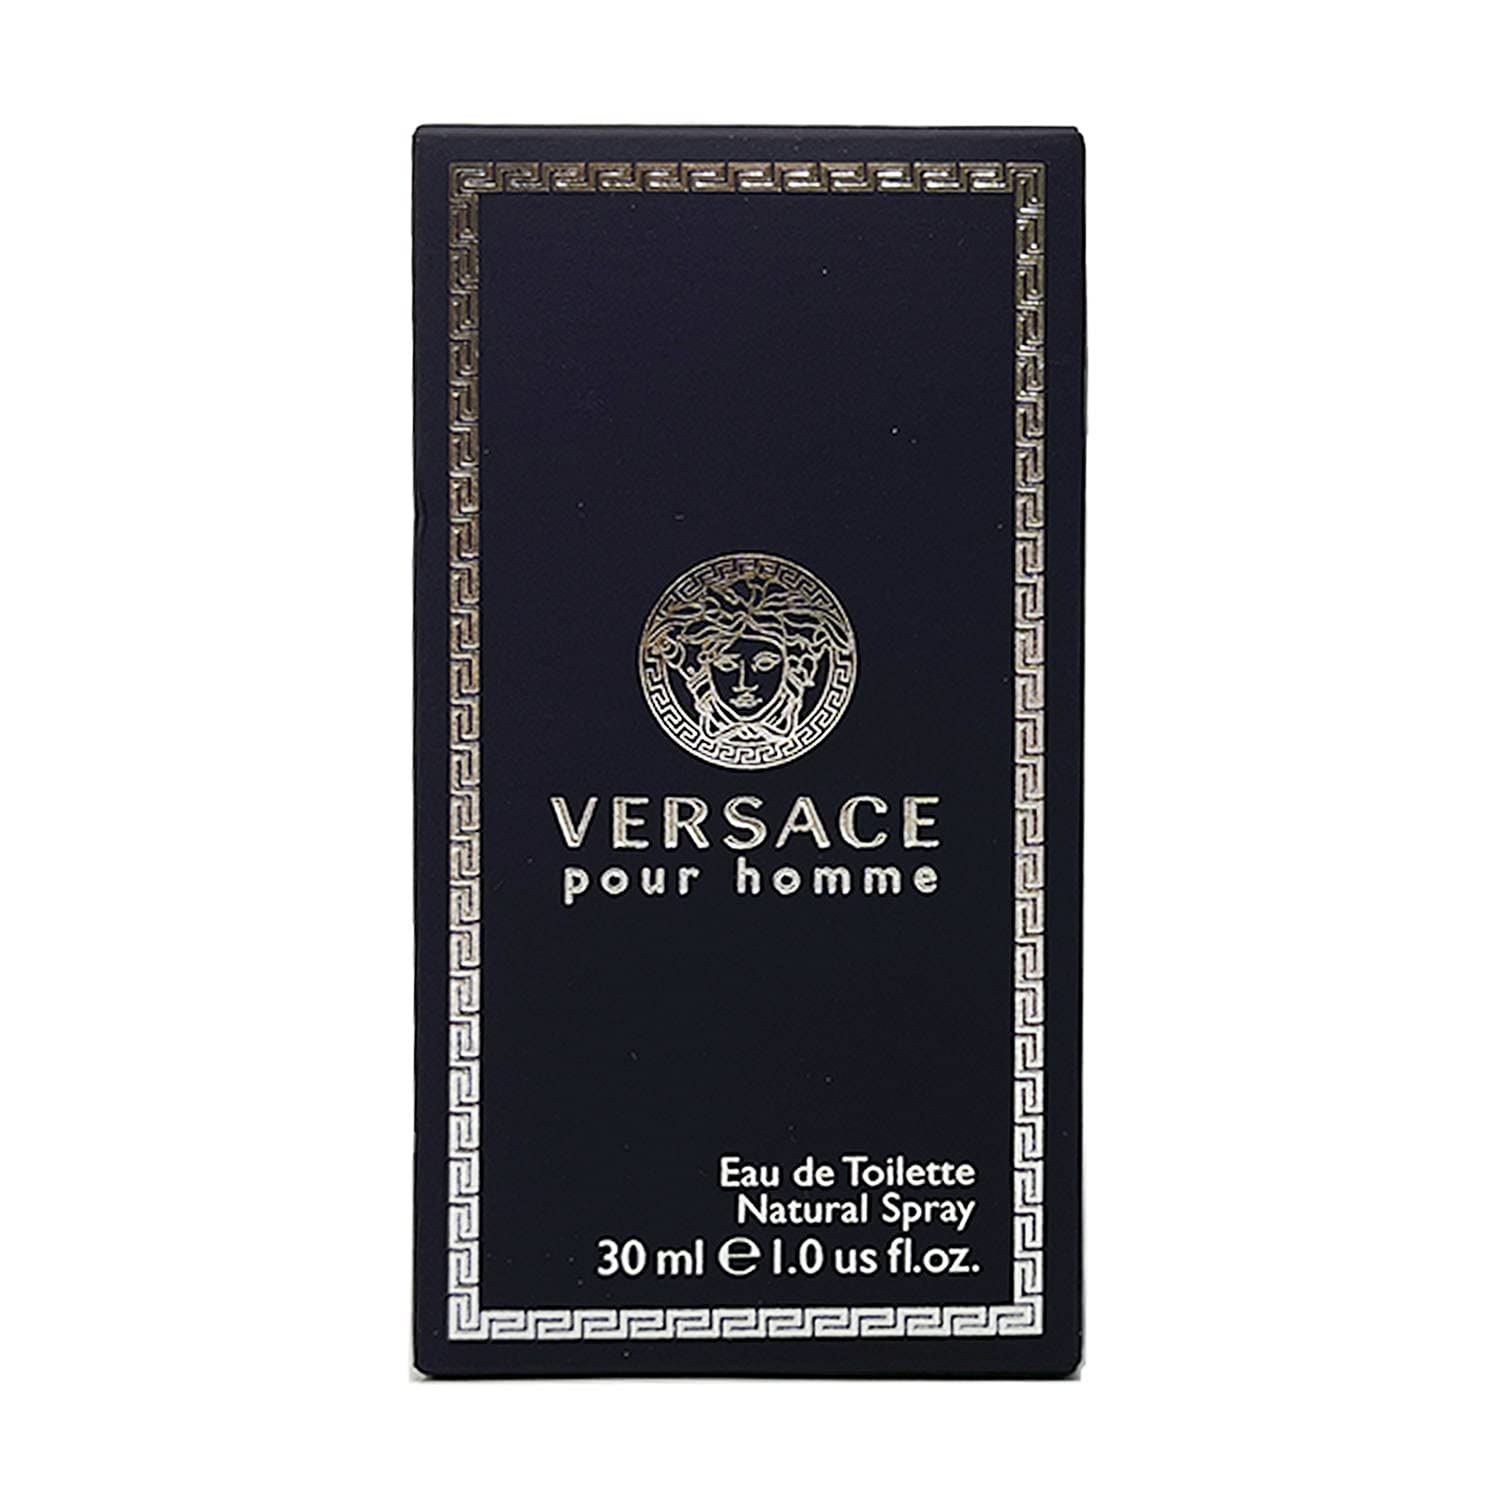 Versace होमे यू डे टॉयलेट नेचुरल स्प्रे 1.0 औंस डालें